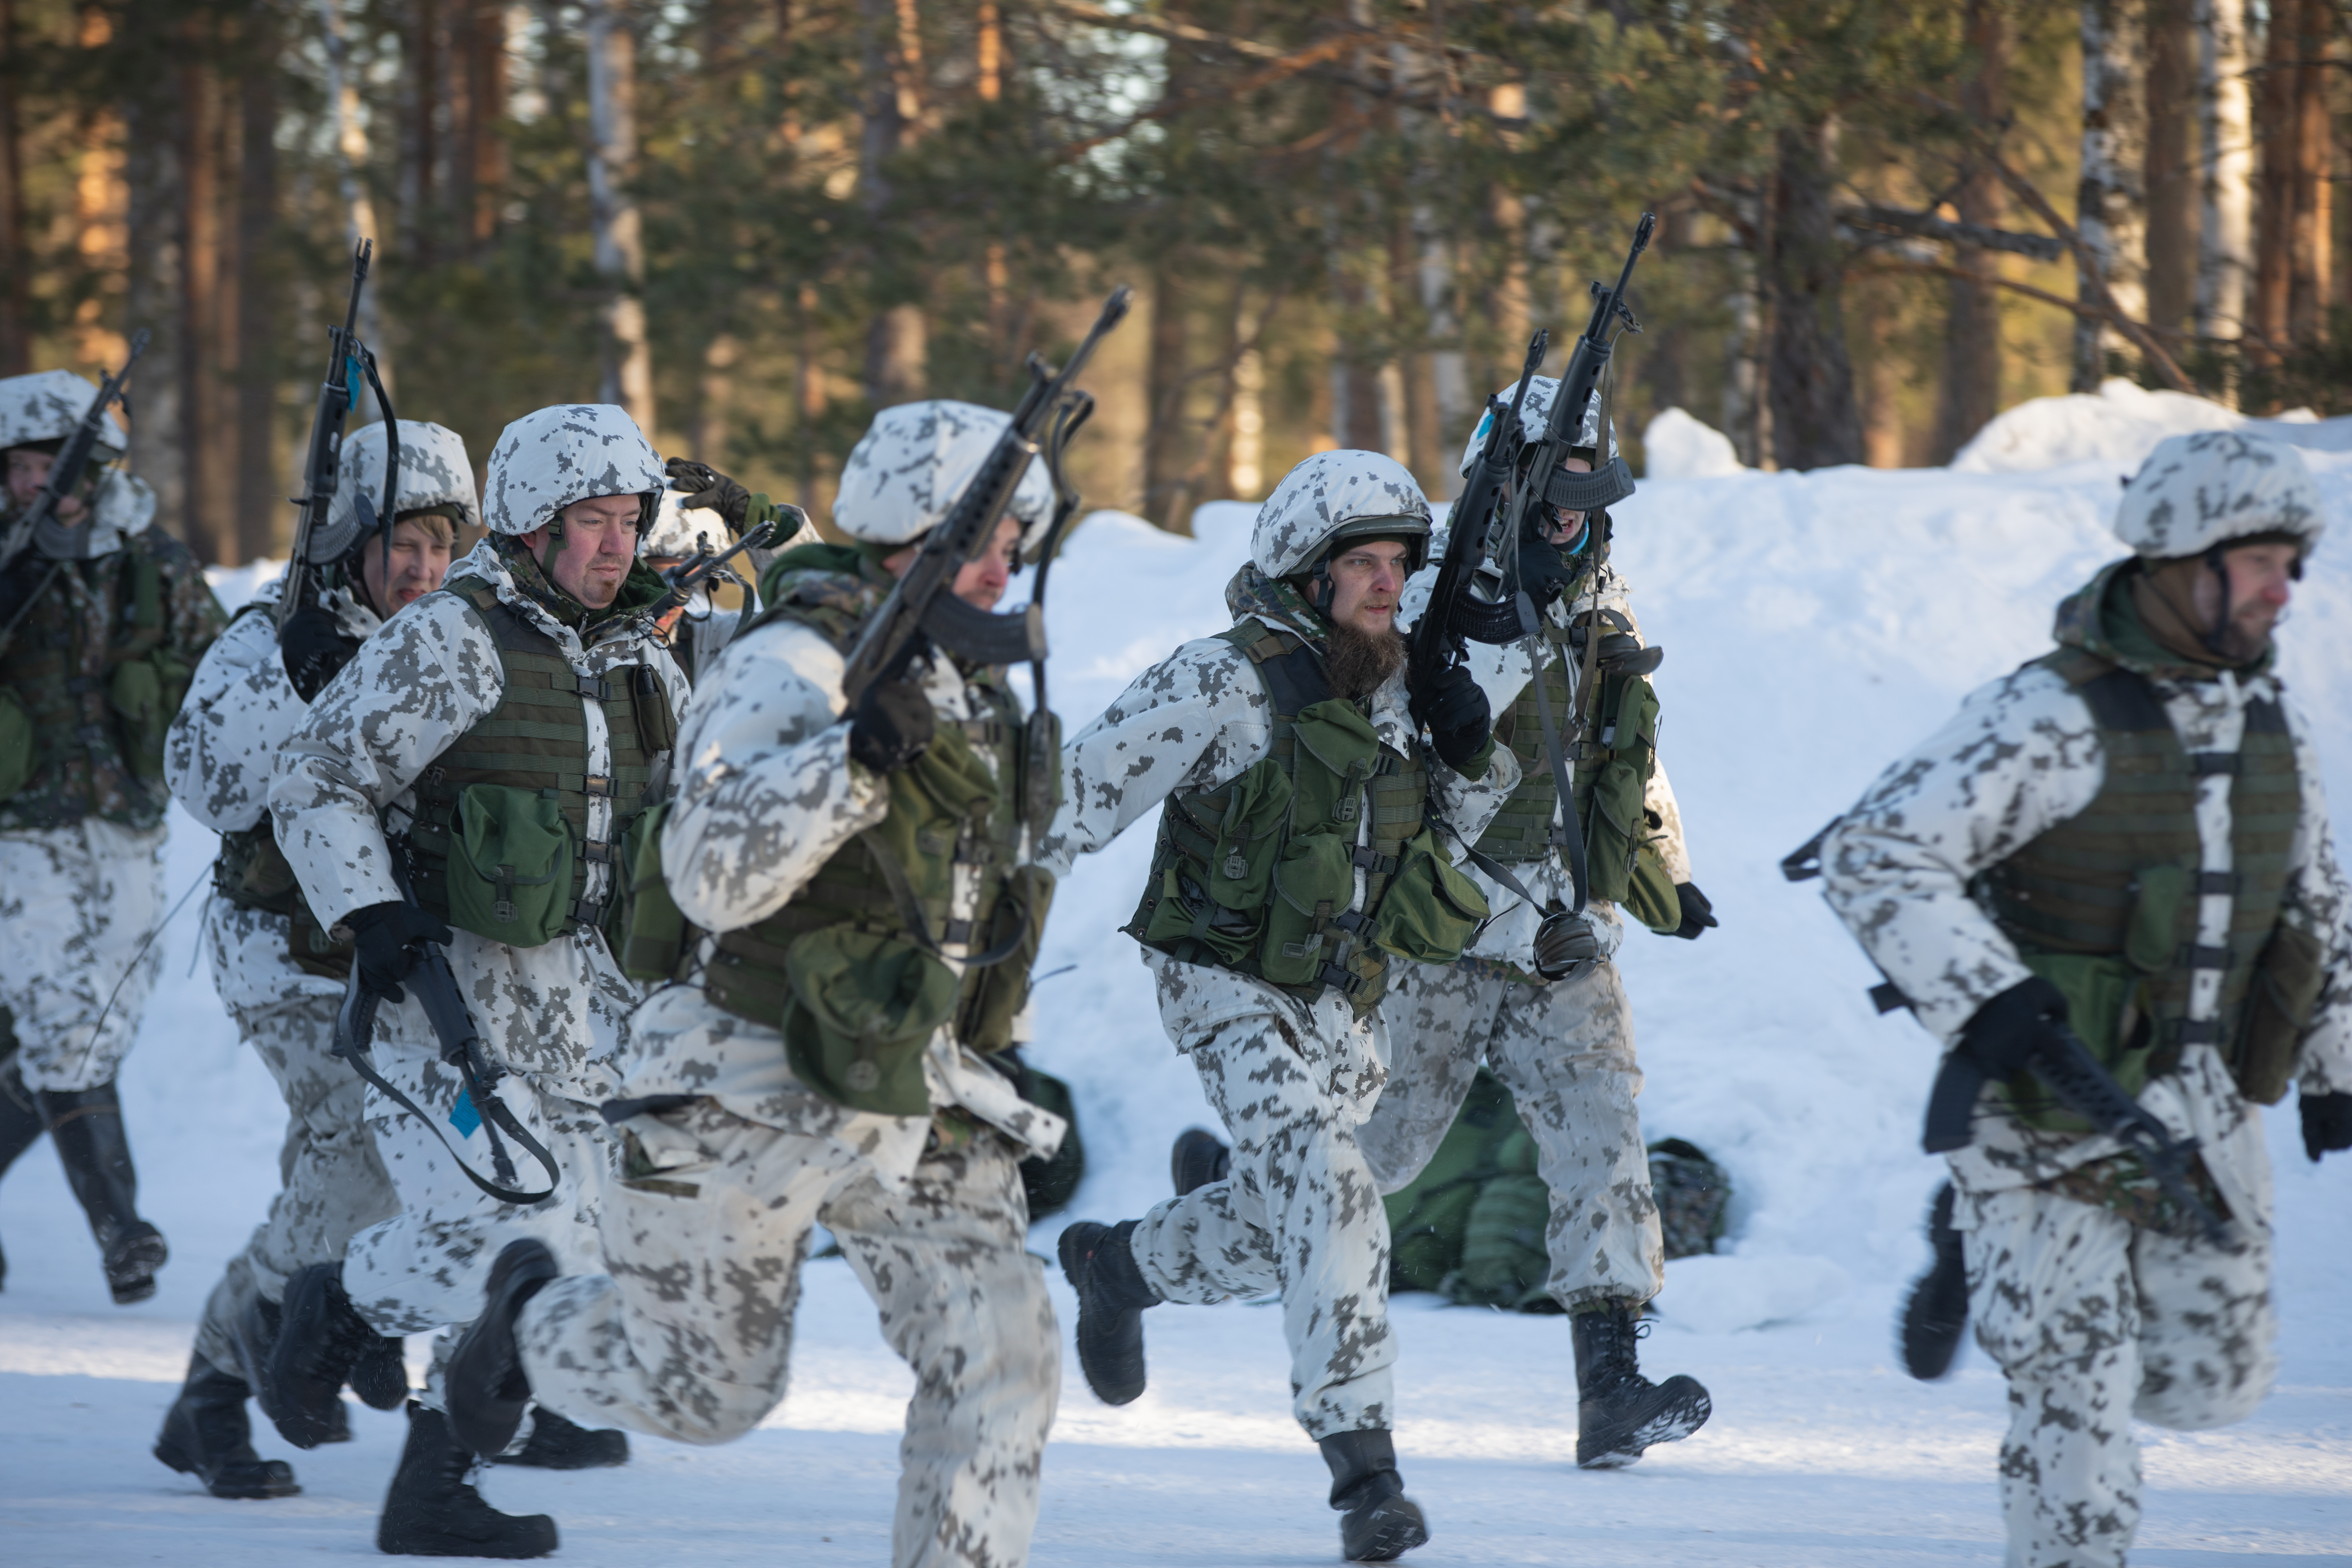 talvipukuiset sotilaat juoksevat aseet kädessään talvisessa metsämaisemassa